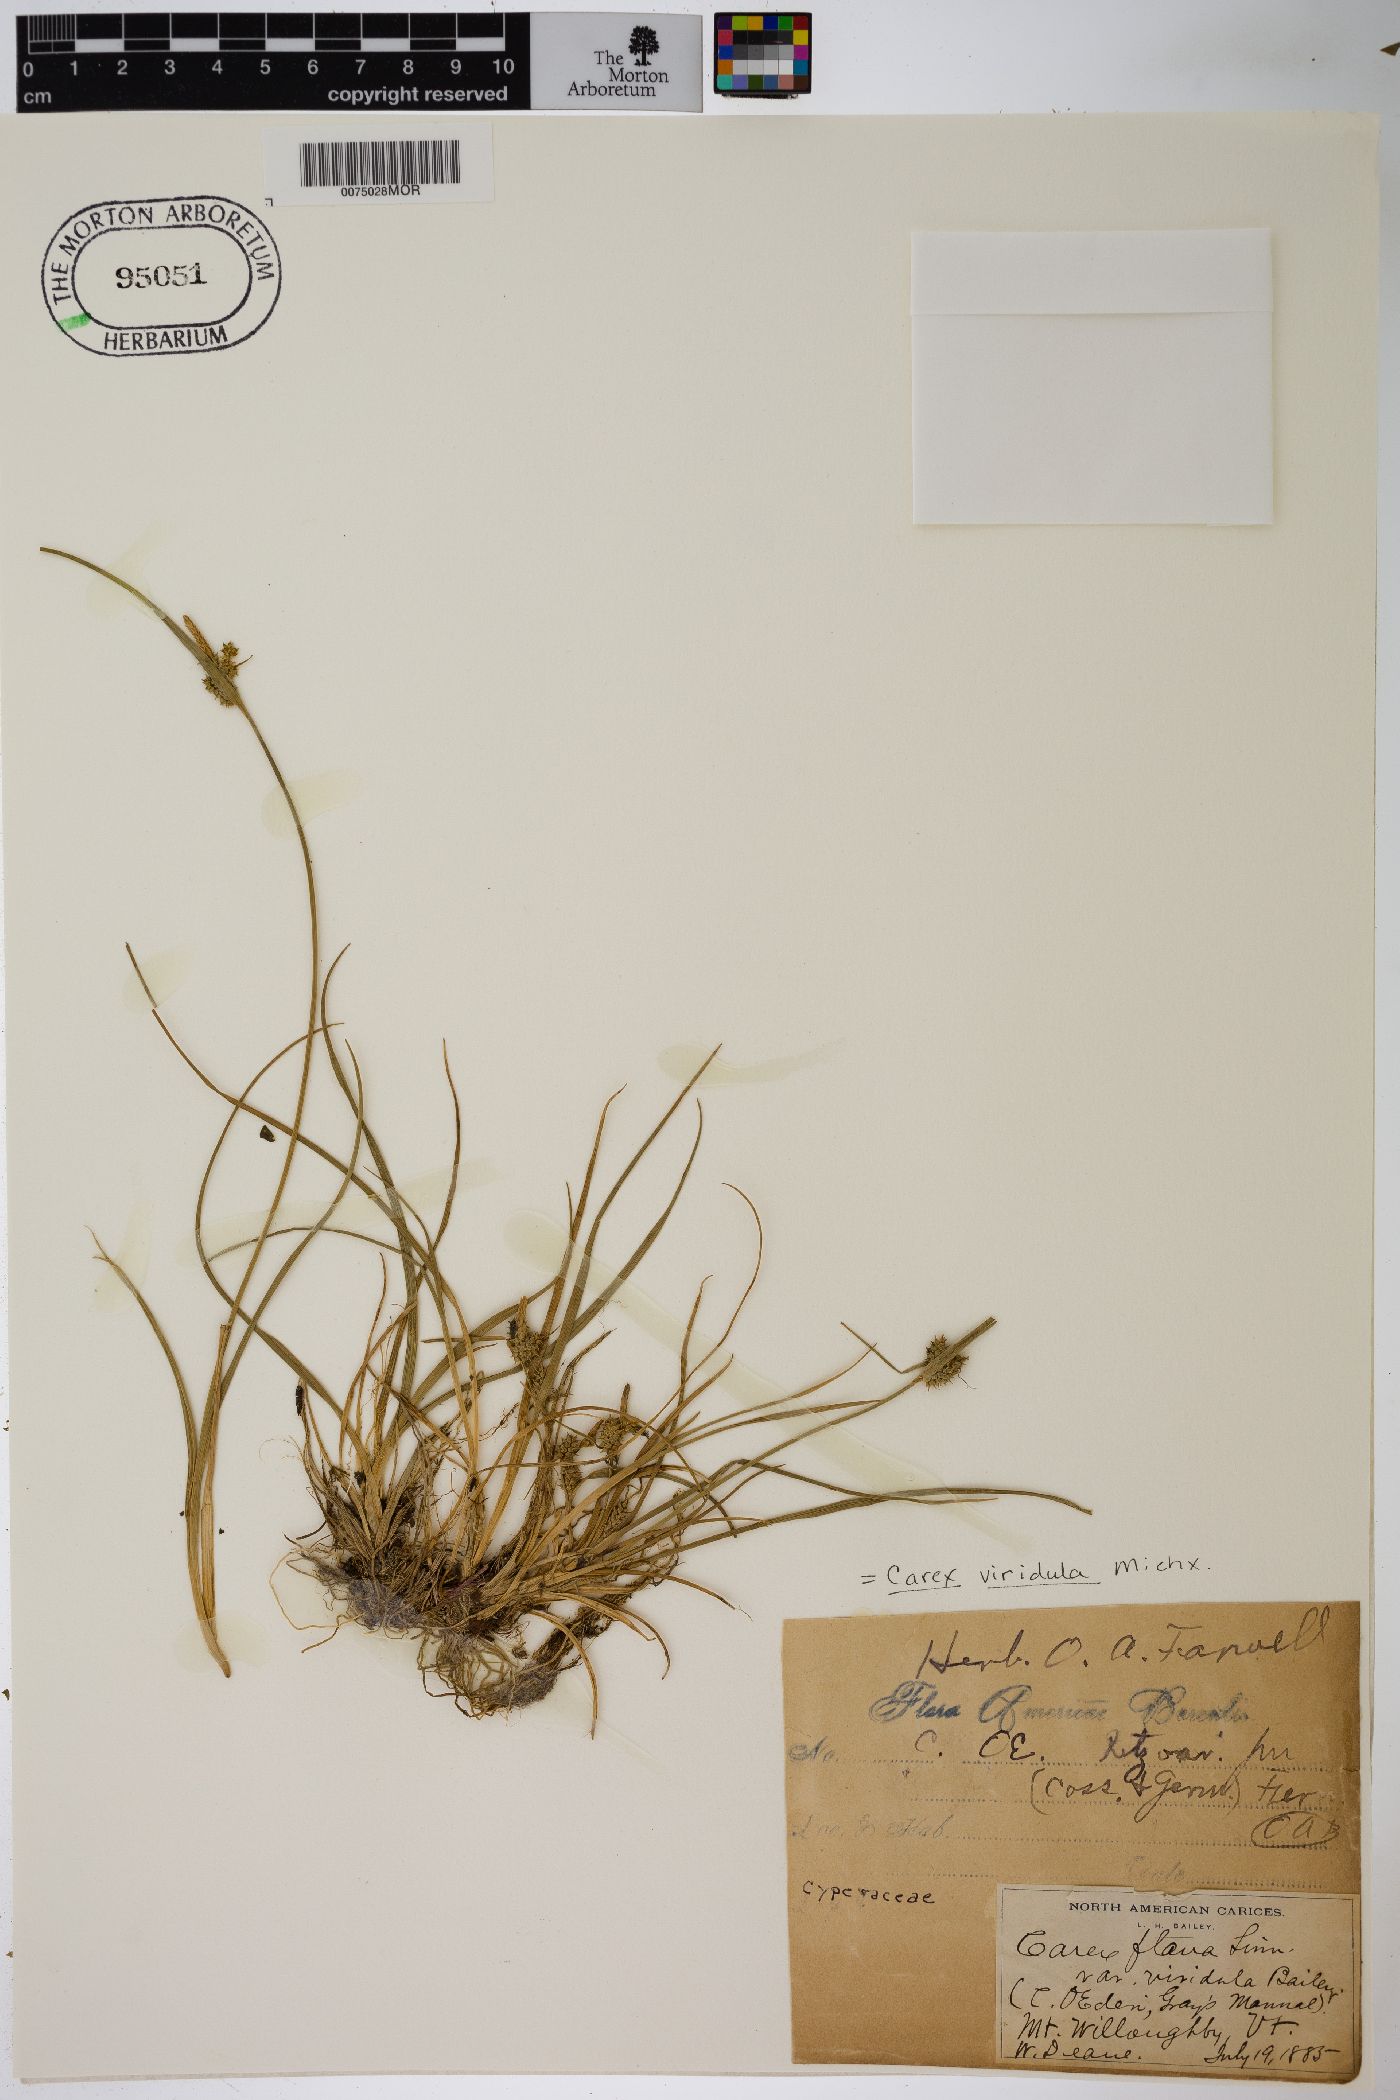 Carex flava var. viridula image